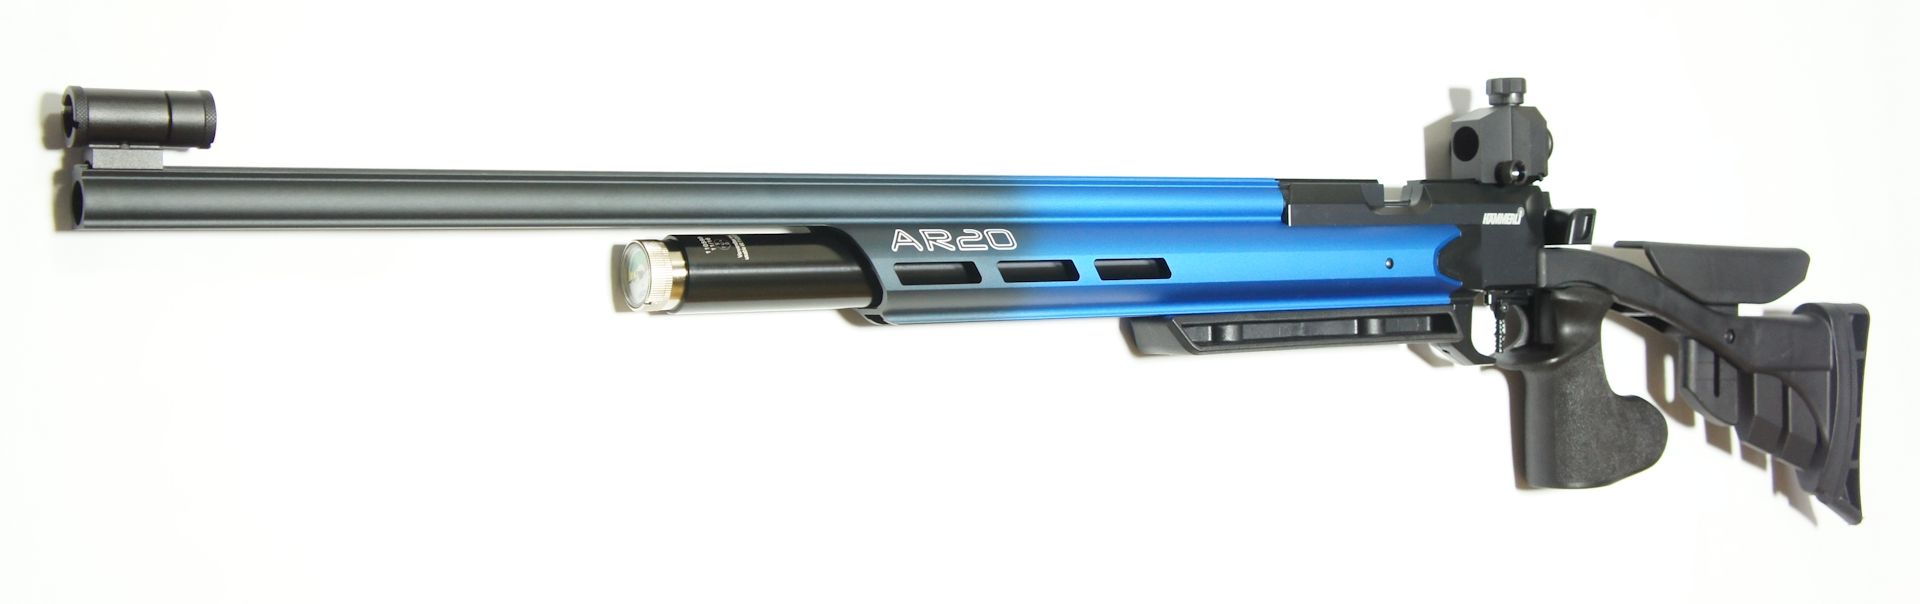 Hämmerli AR 20  Deep Blue, rechts,  4,5mm